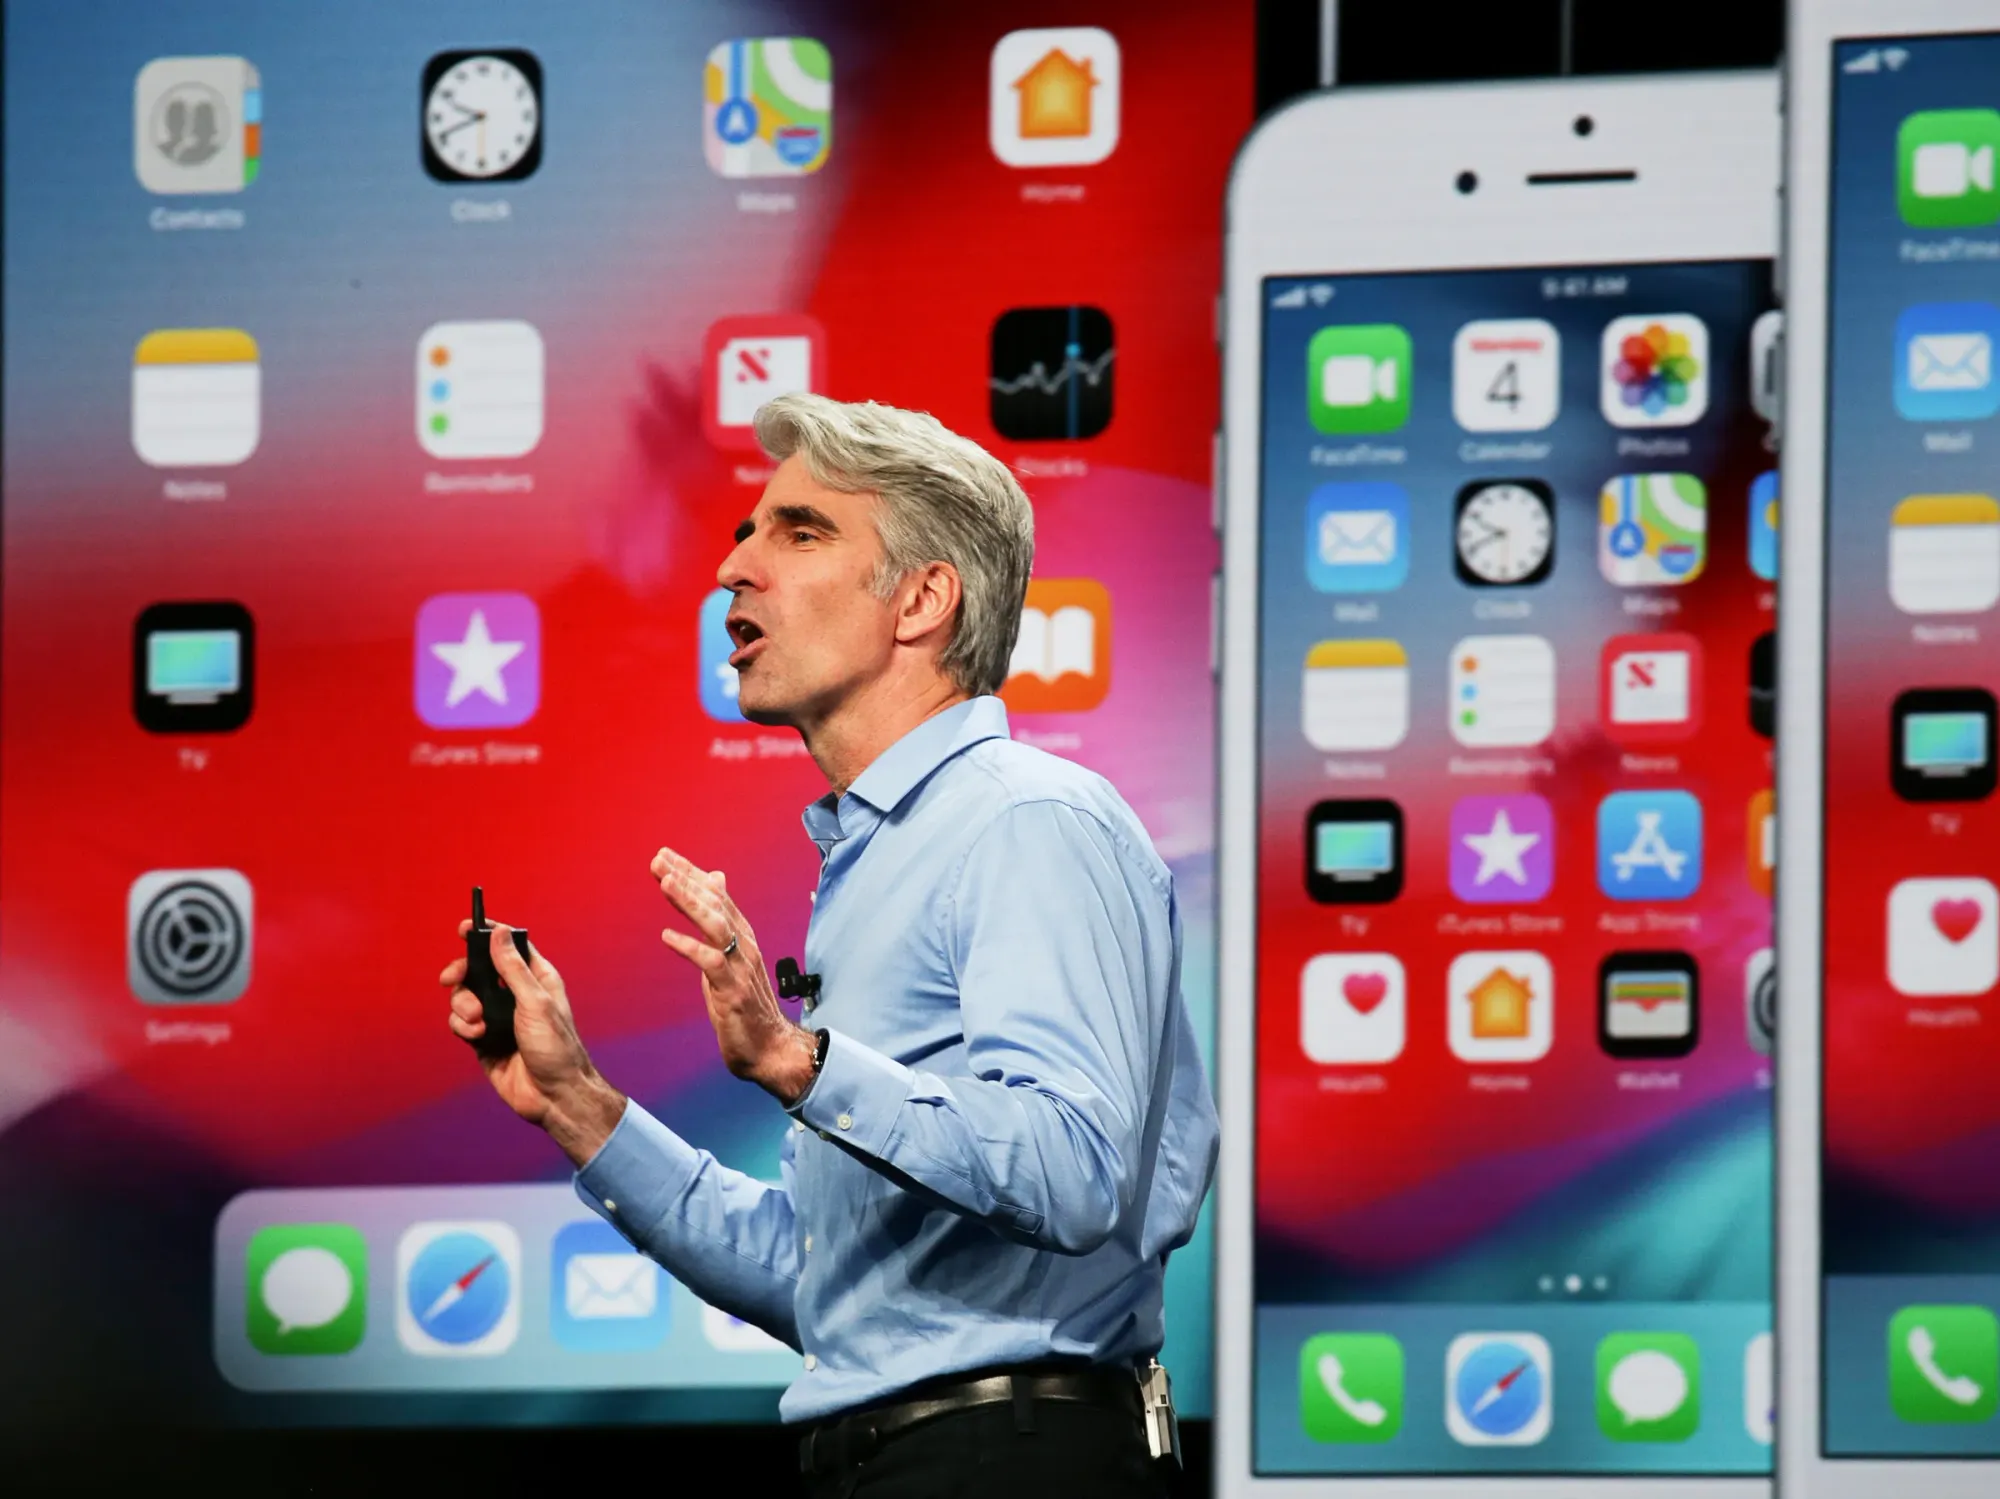 iOS 12.5.6 corrige falhas de segurança em iPhones e iPads mais antigos